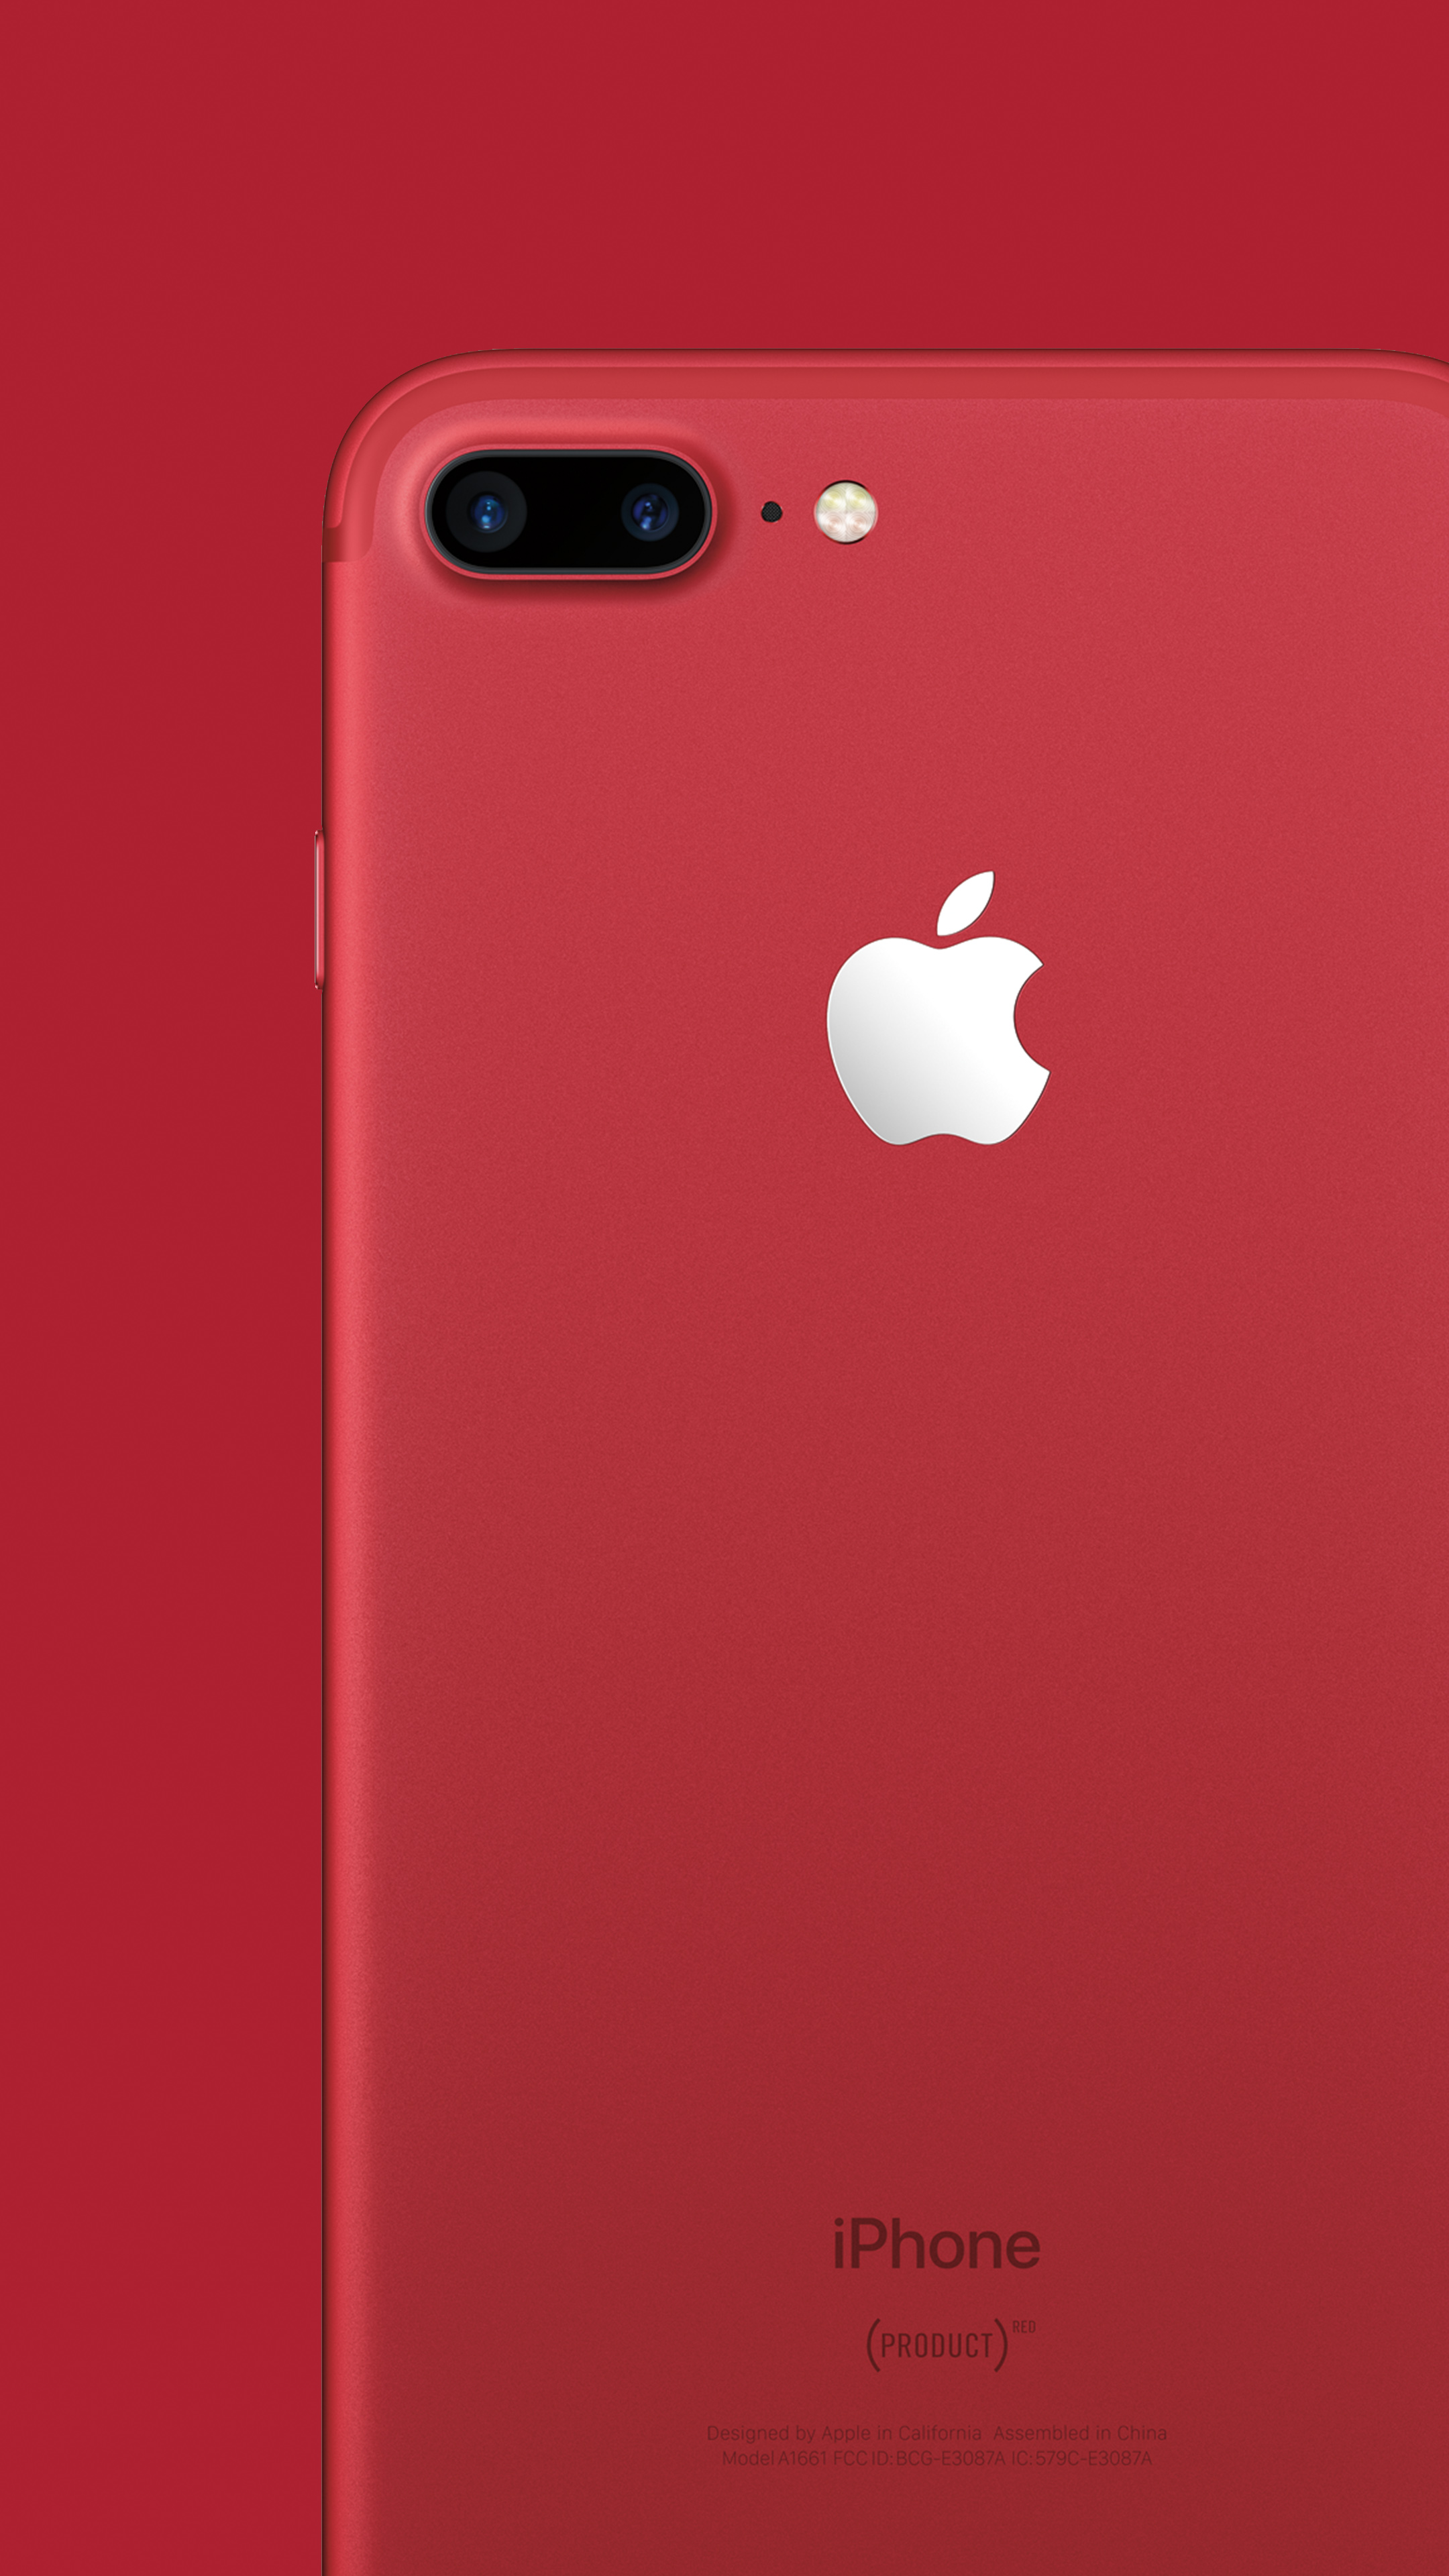 壁紙 Iphone 7 Product Red Special Edition の壁紙を作ったよwww Blog Nobon